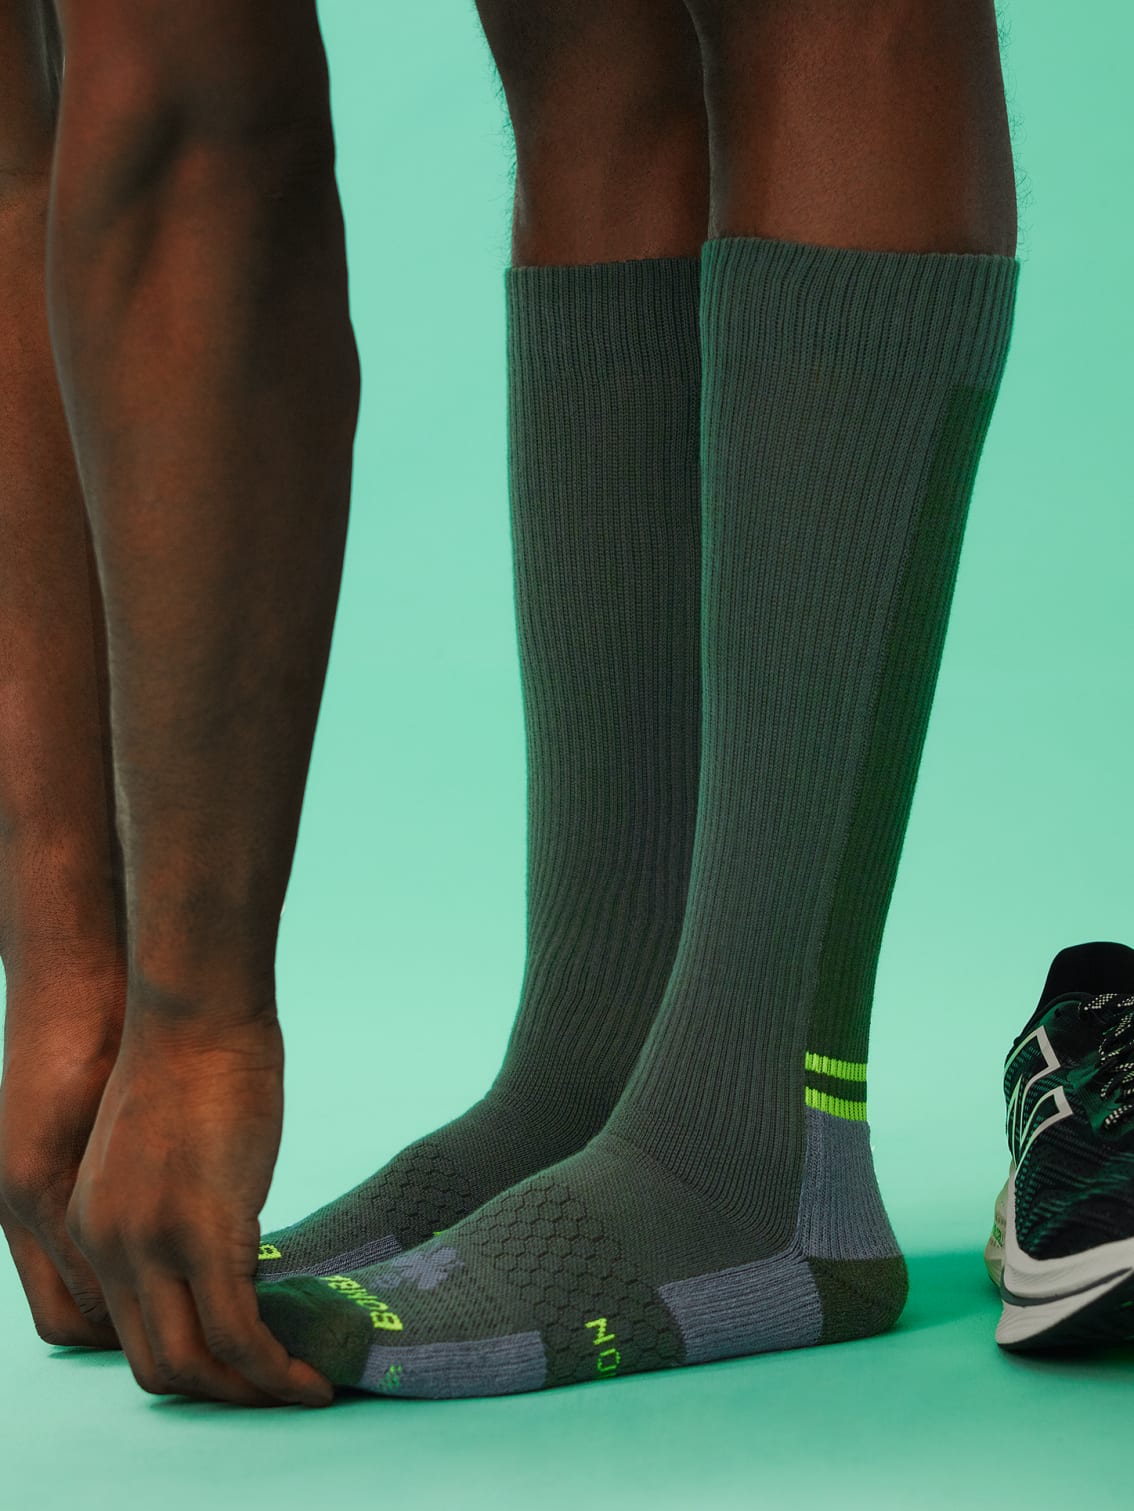 Men's Compression Socks for Travel